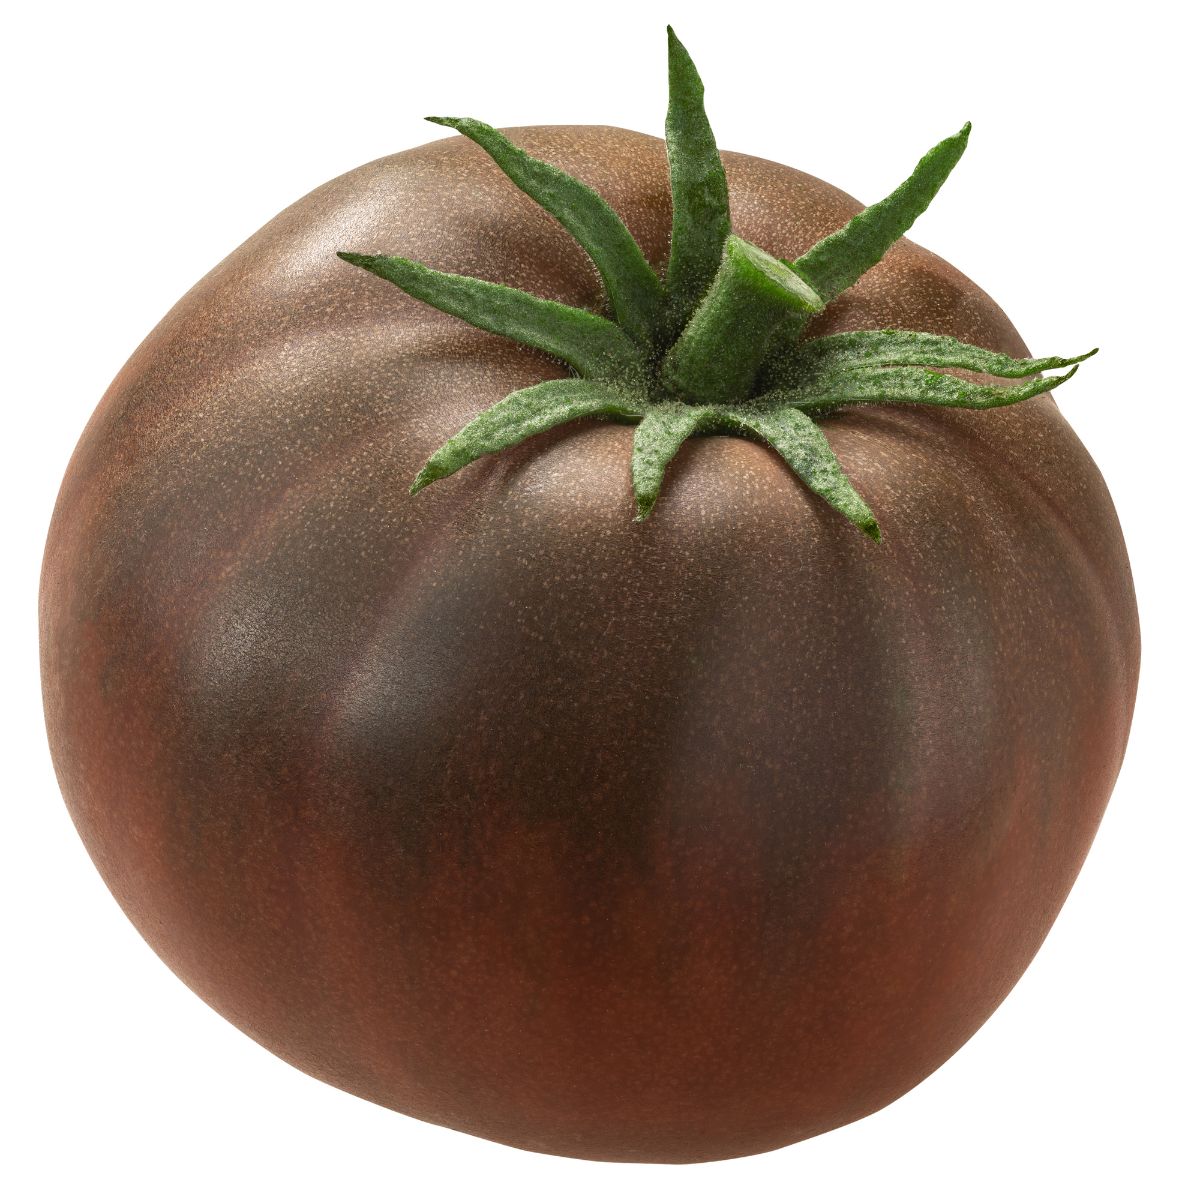 A black krim tomato on a white background.